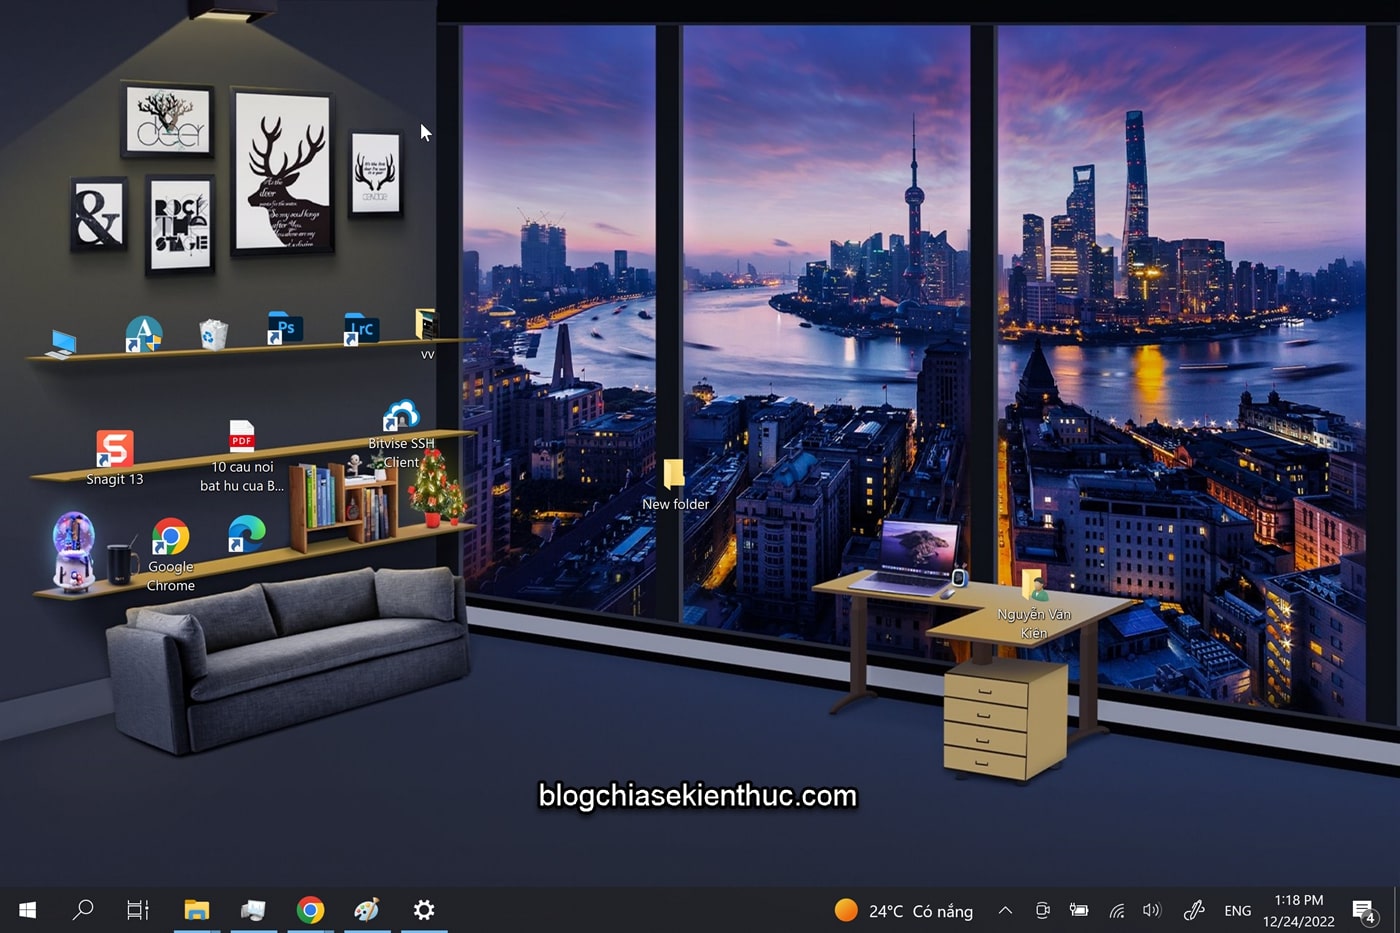 cach-loai-bo-ten-cua-icon-ngoai-desktop-windows (4)